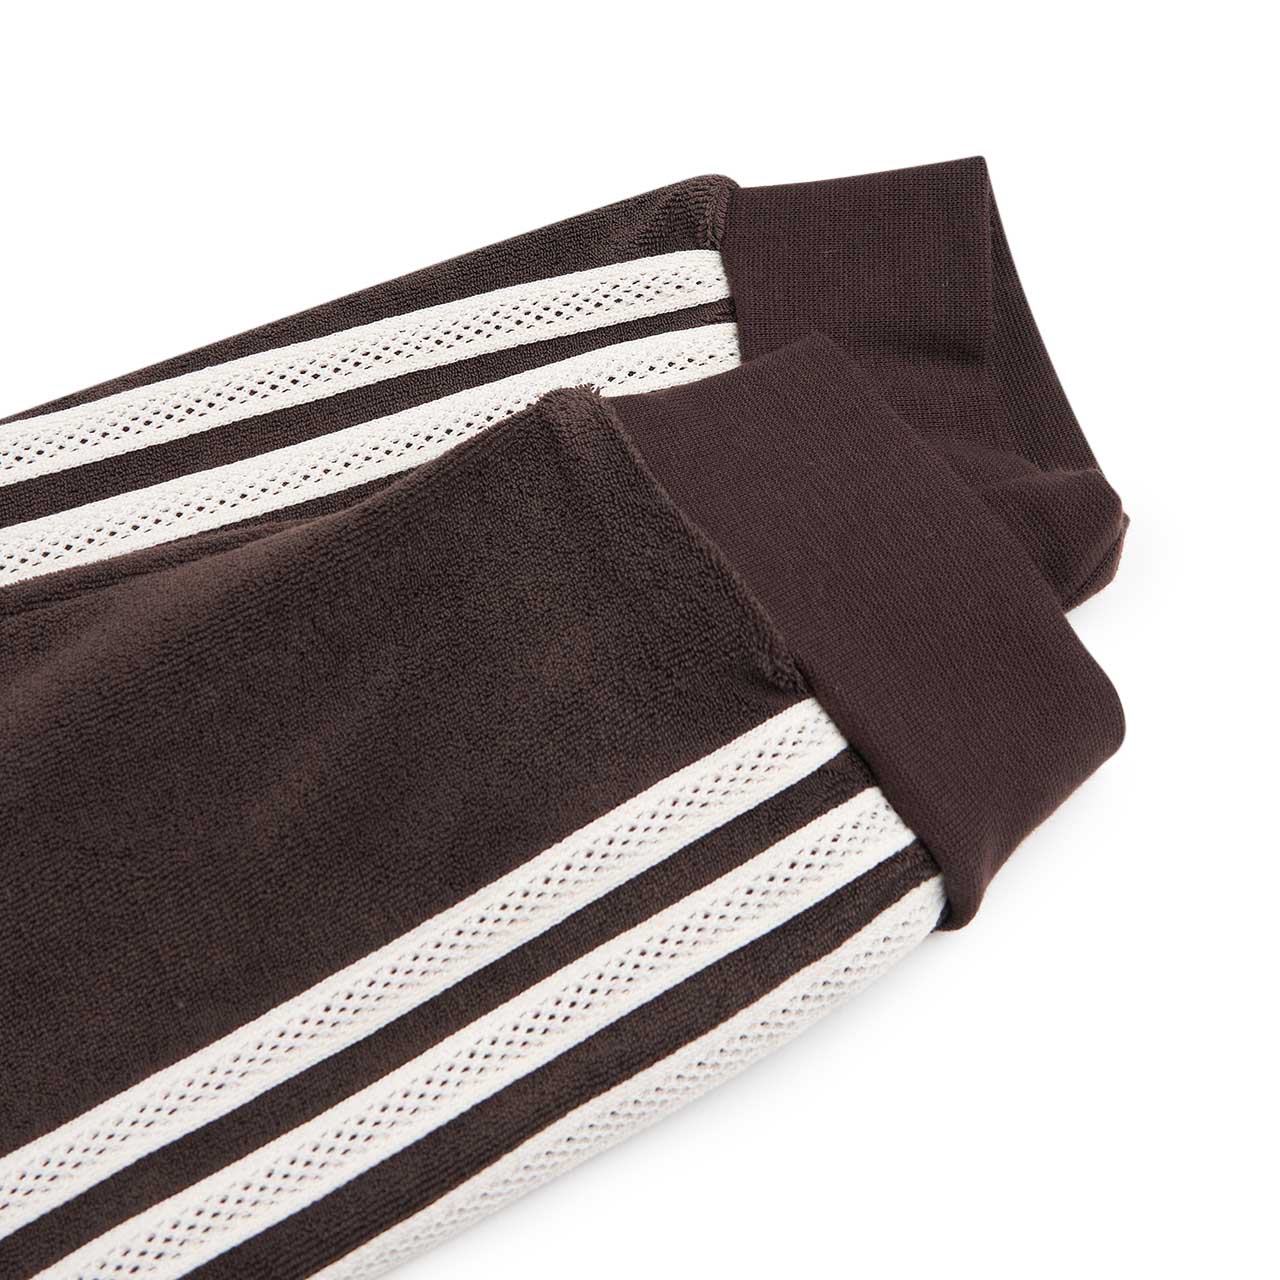 adidas x wales bonner towel longsleeve (brown)